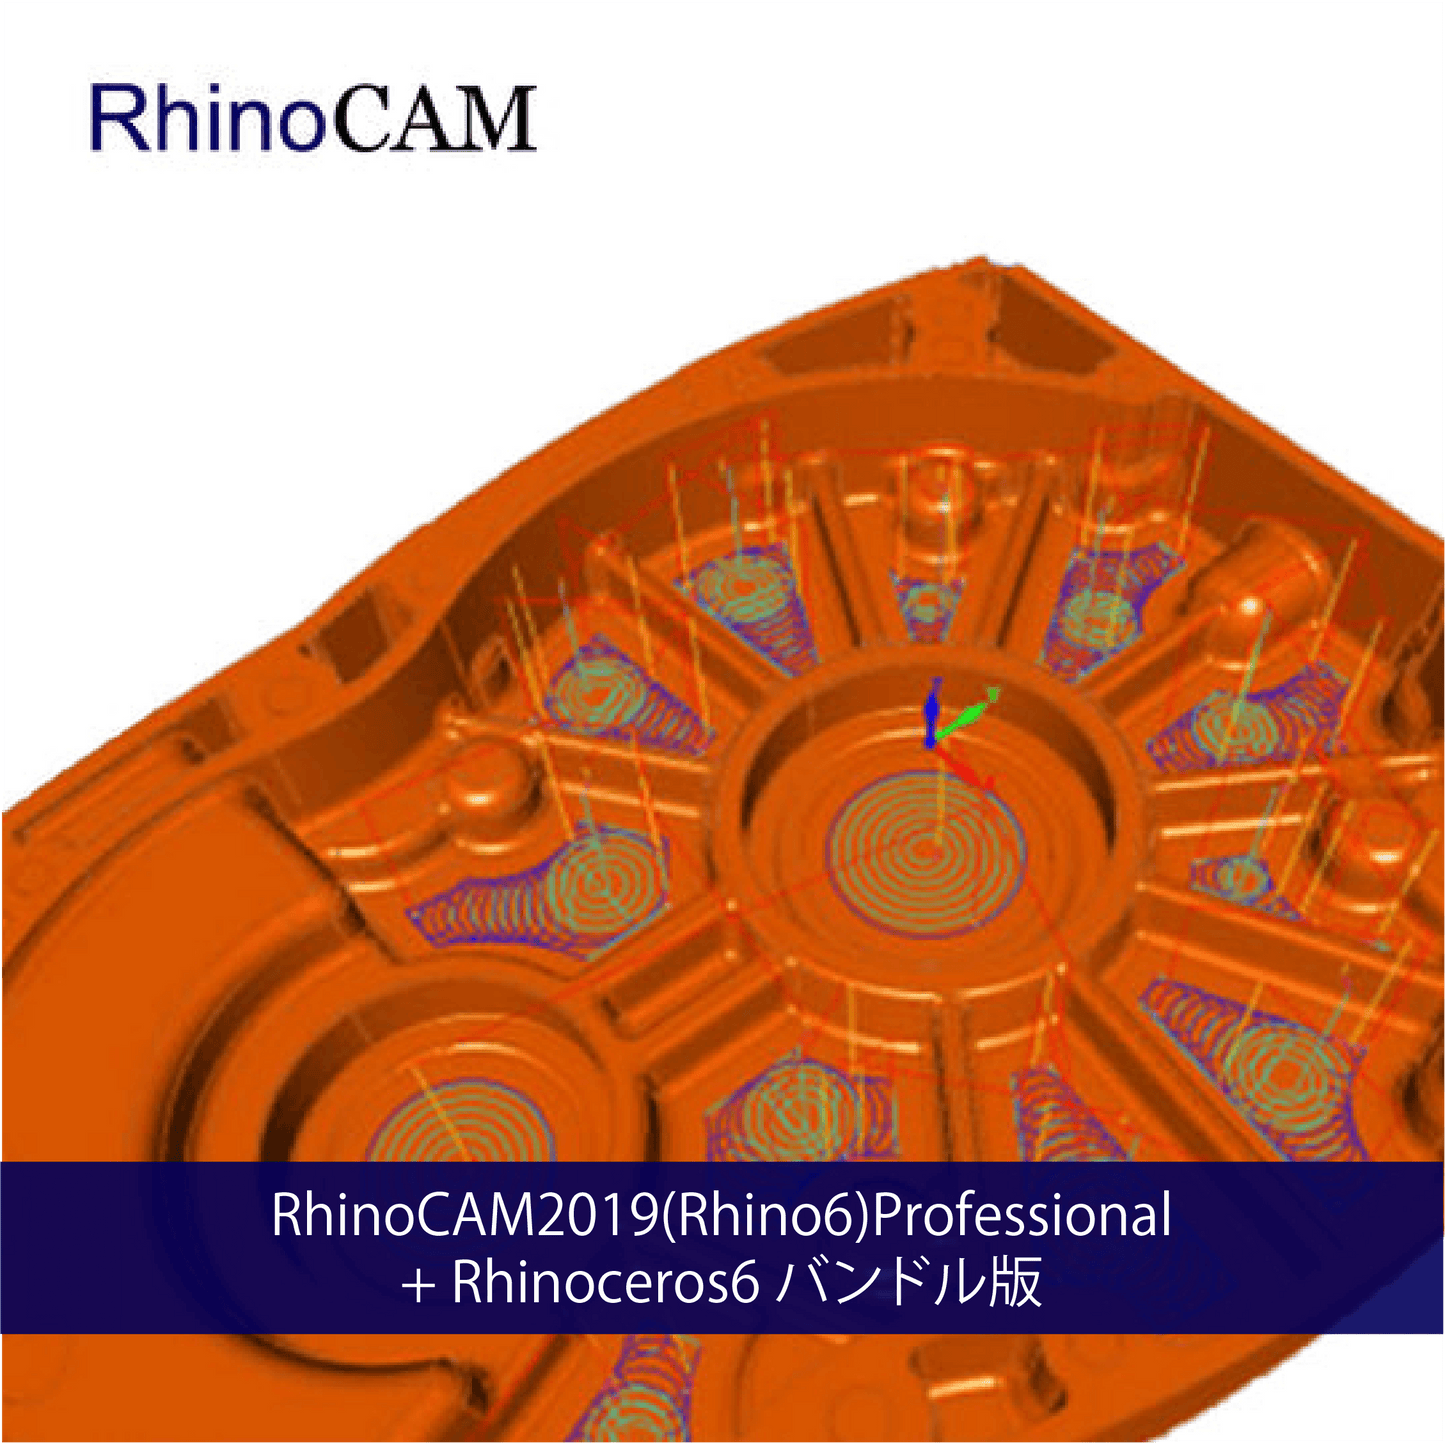 RhinoCAM2019(Rhino6) Professional +Rhinoceros6 バンドル版